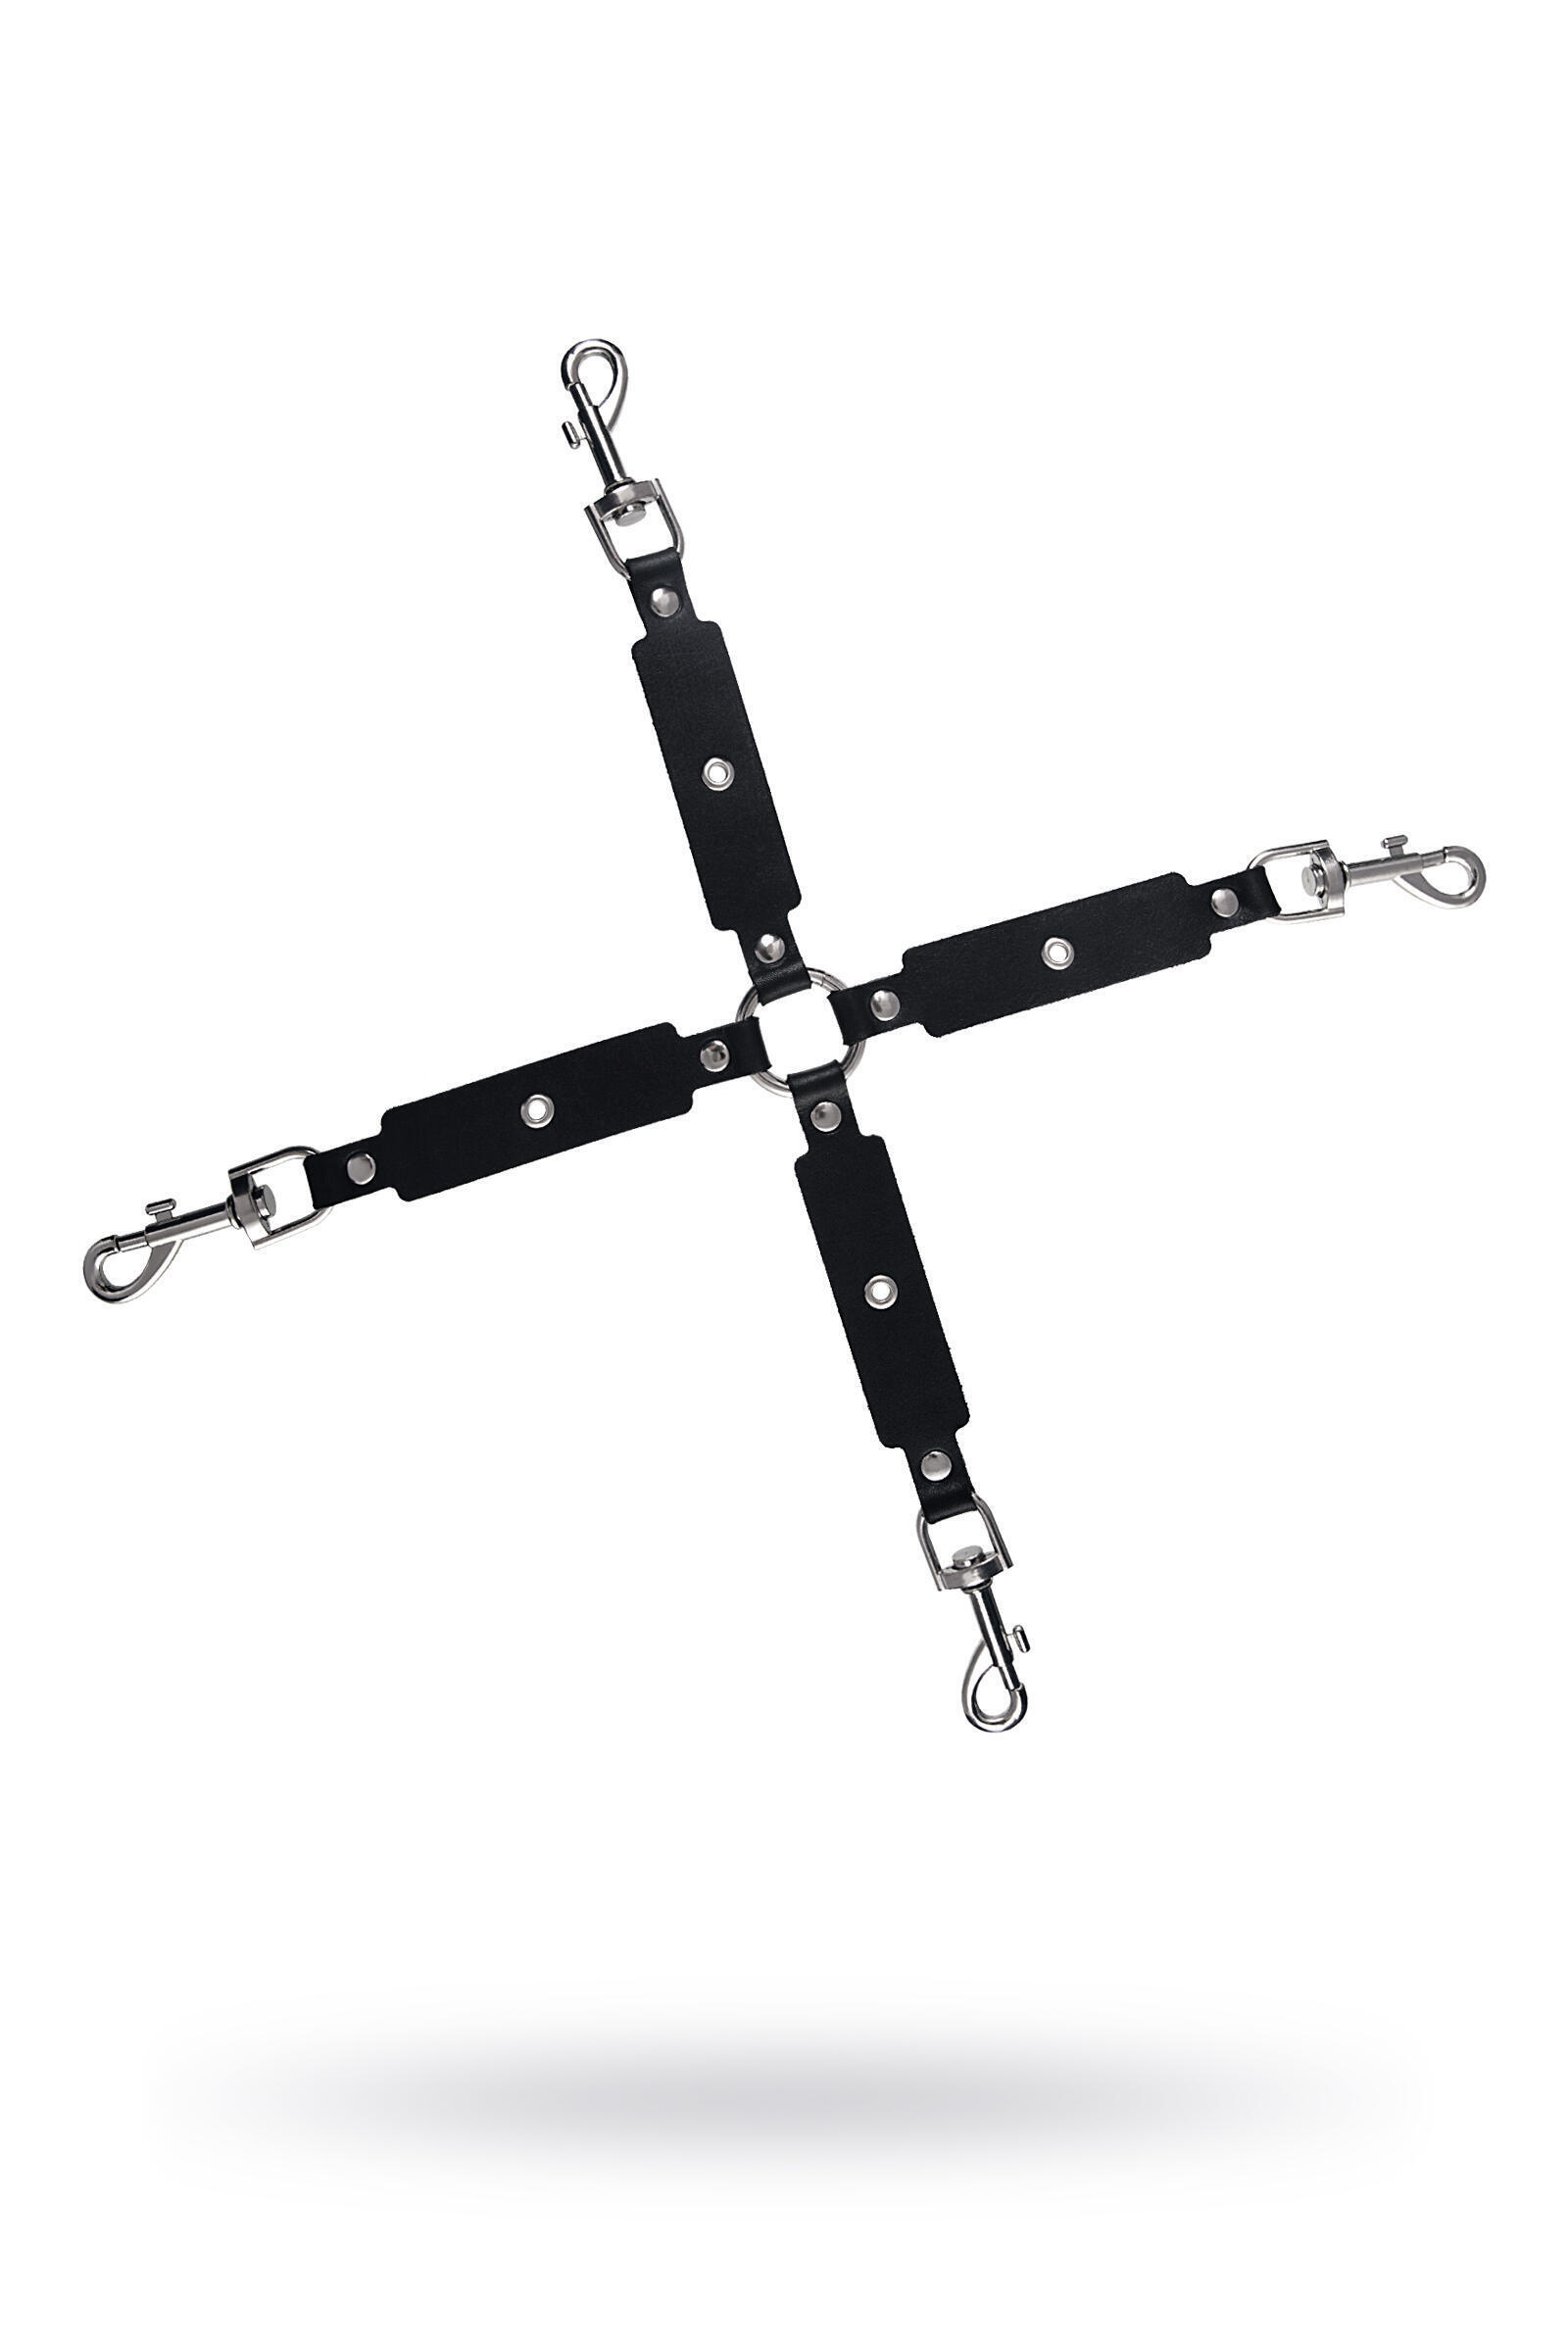 Сцепка крестообразная с карабинами Pecado BDSM для фиксации рук и ног, натуральная кожа, черный